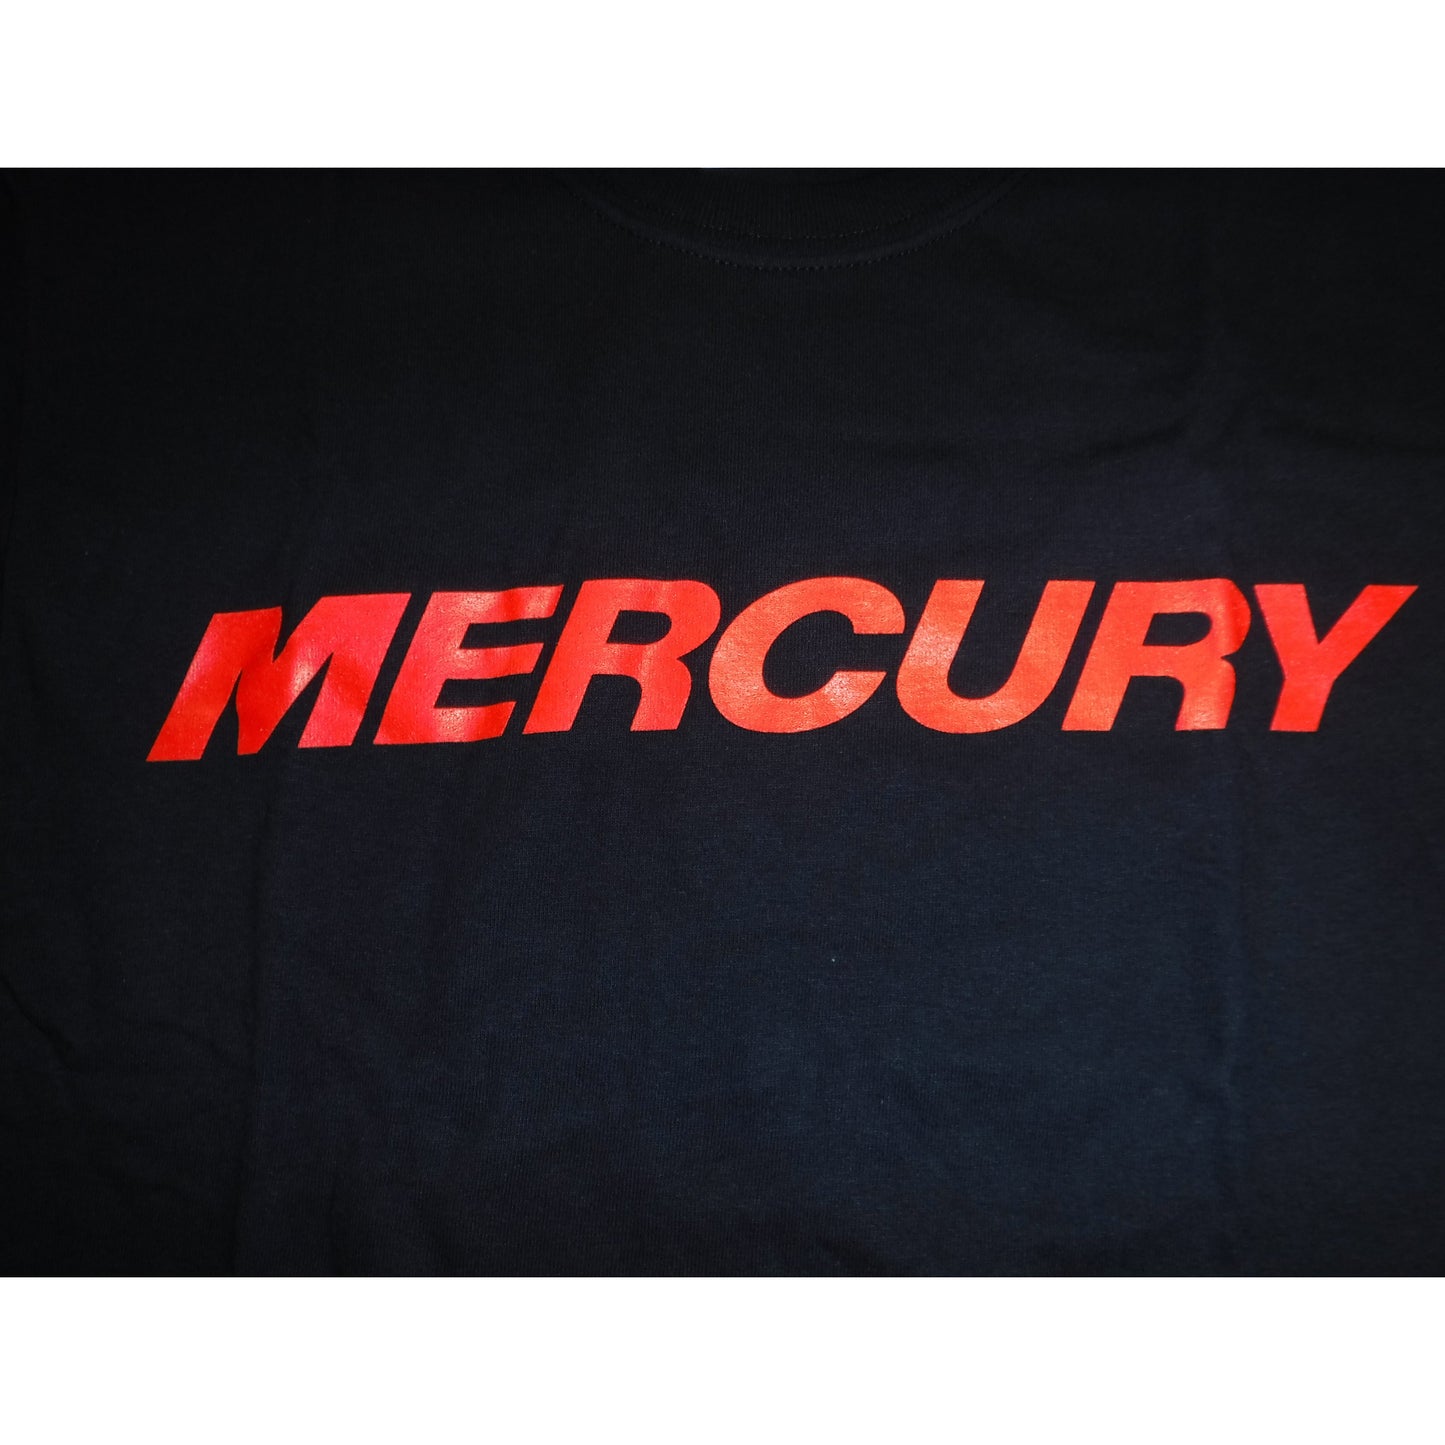 New Authentic Mercury Marine Short Sleeve Shirt Black/ Mercury on Front/ Logo on Back  2XL